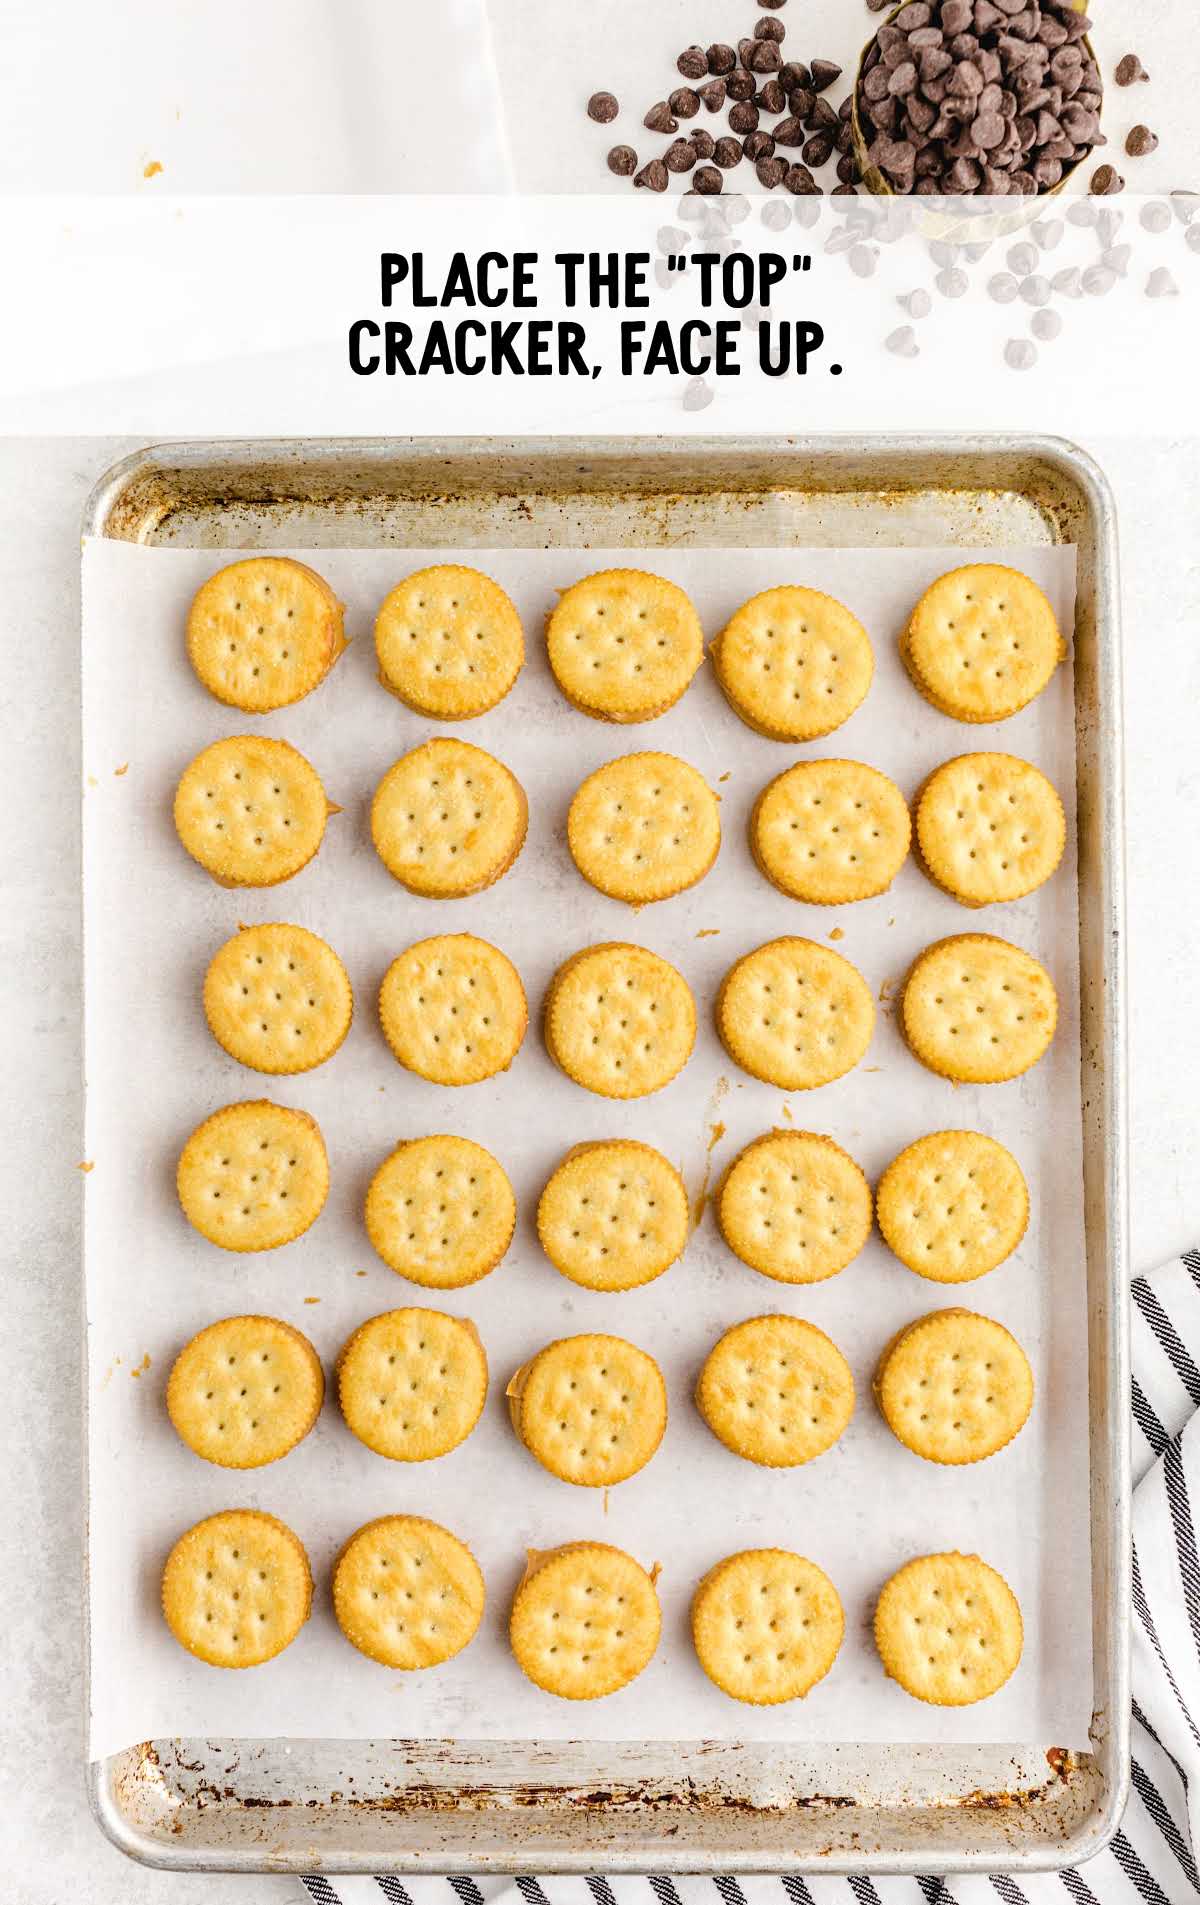 top cracker faced up on a baking sheet